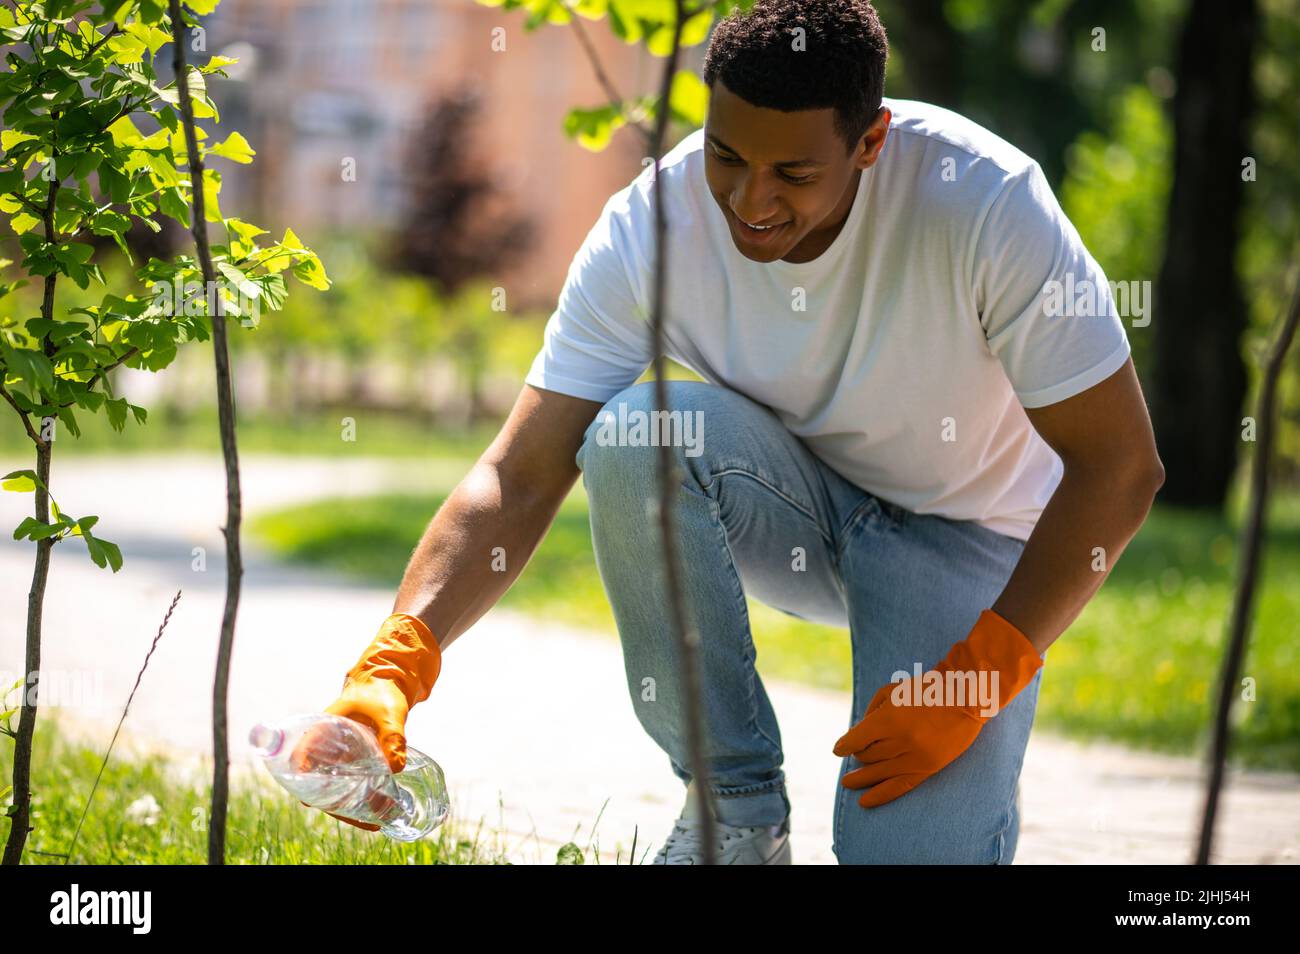 Guy watering tree seedlings in park Stock Photo